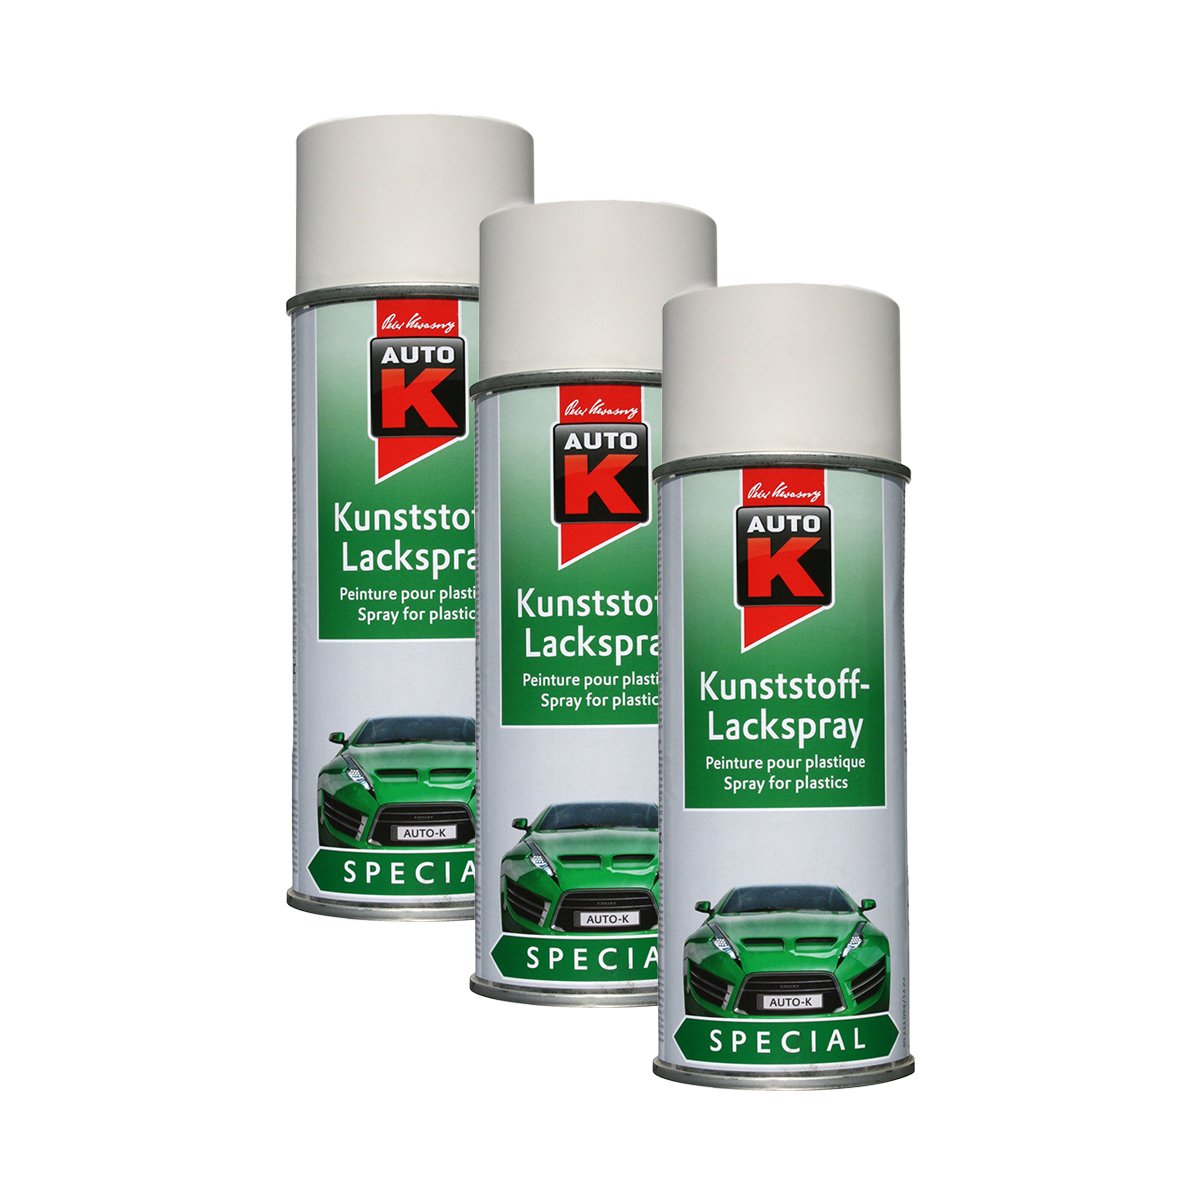 Kunststoff-Lackspray Weiß 400Ml Kwasny 233 094 Auto-K Special 3X